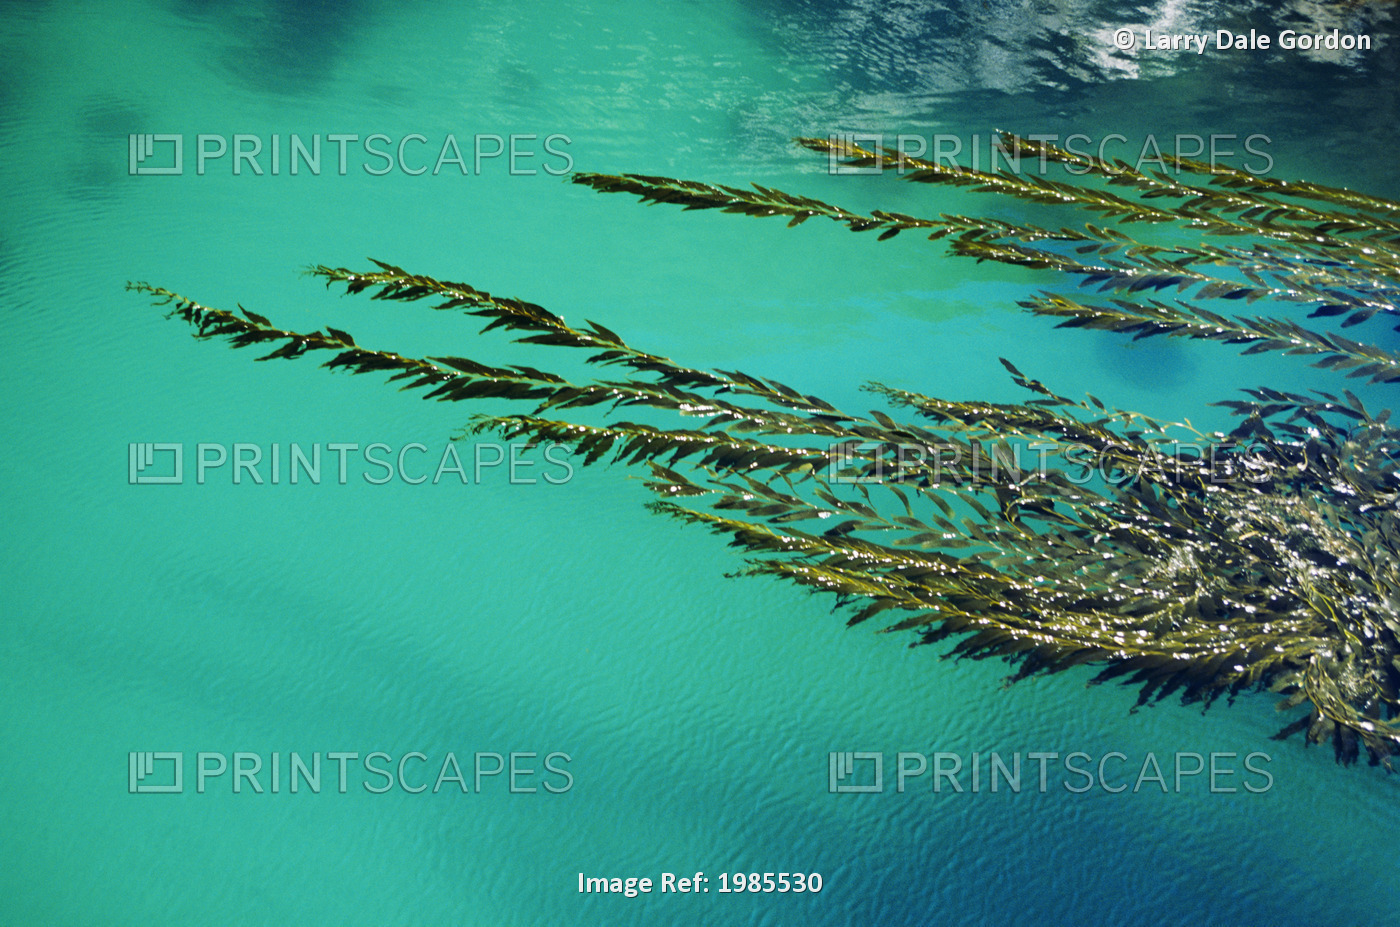 USA, California, Seaweed floating in turquoise ocean water on coastline; Big Sur